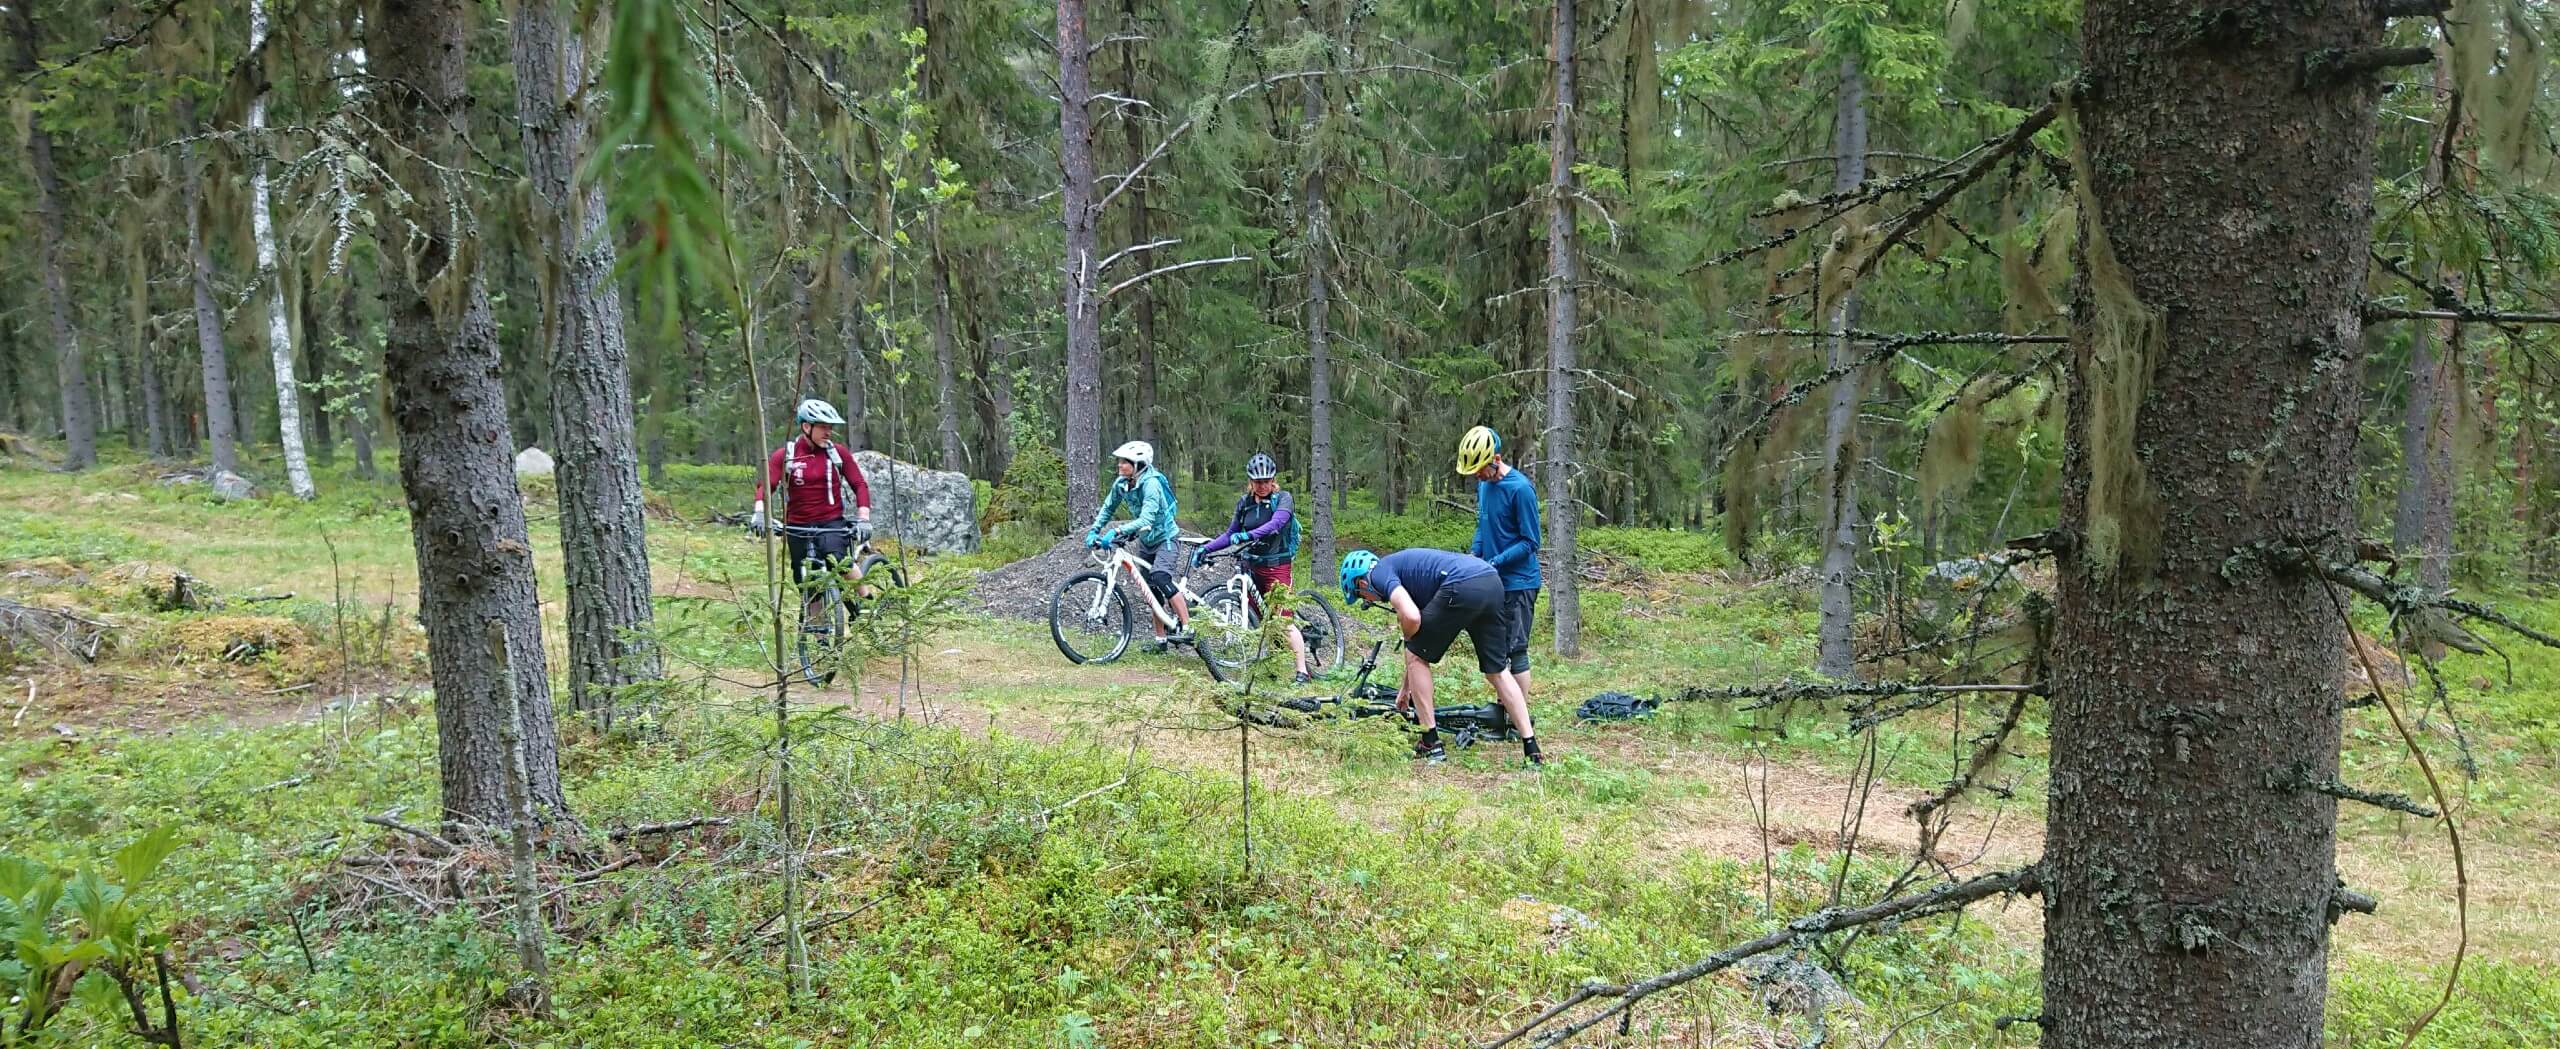 Bike & Hike in Sweden’s Wilderness